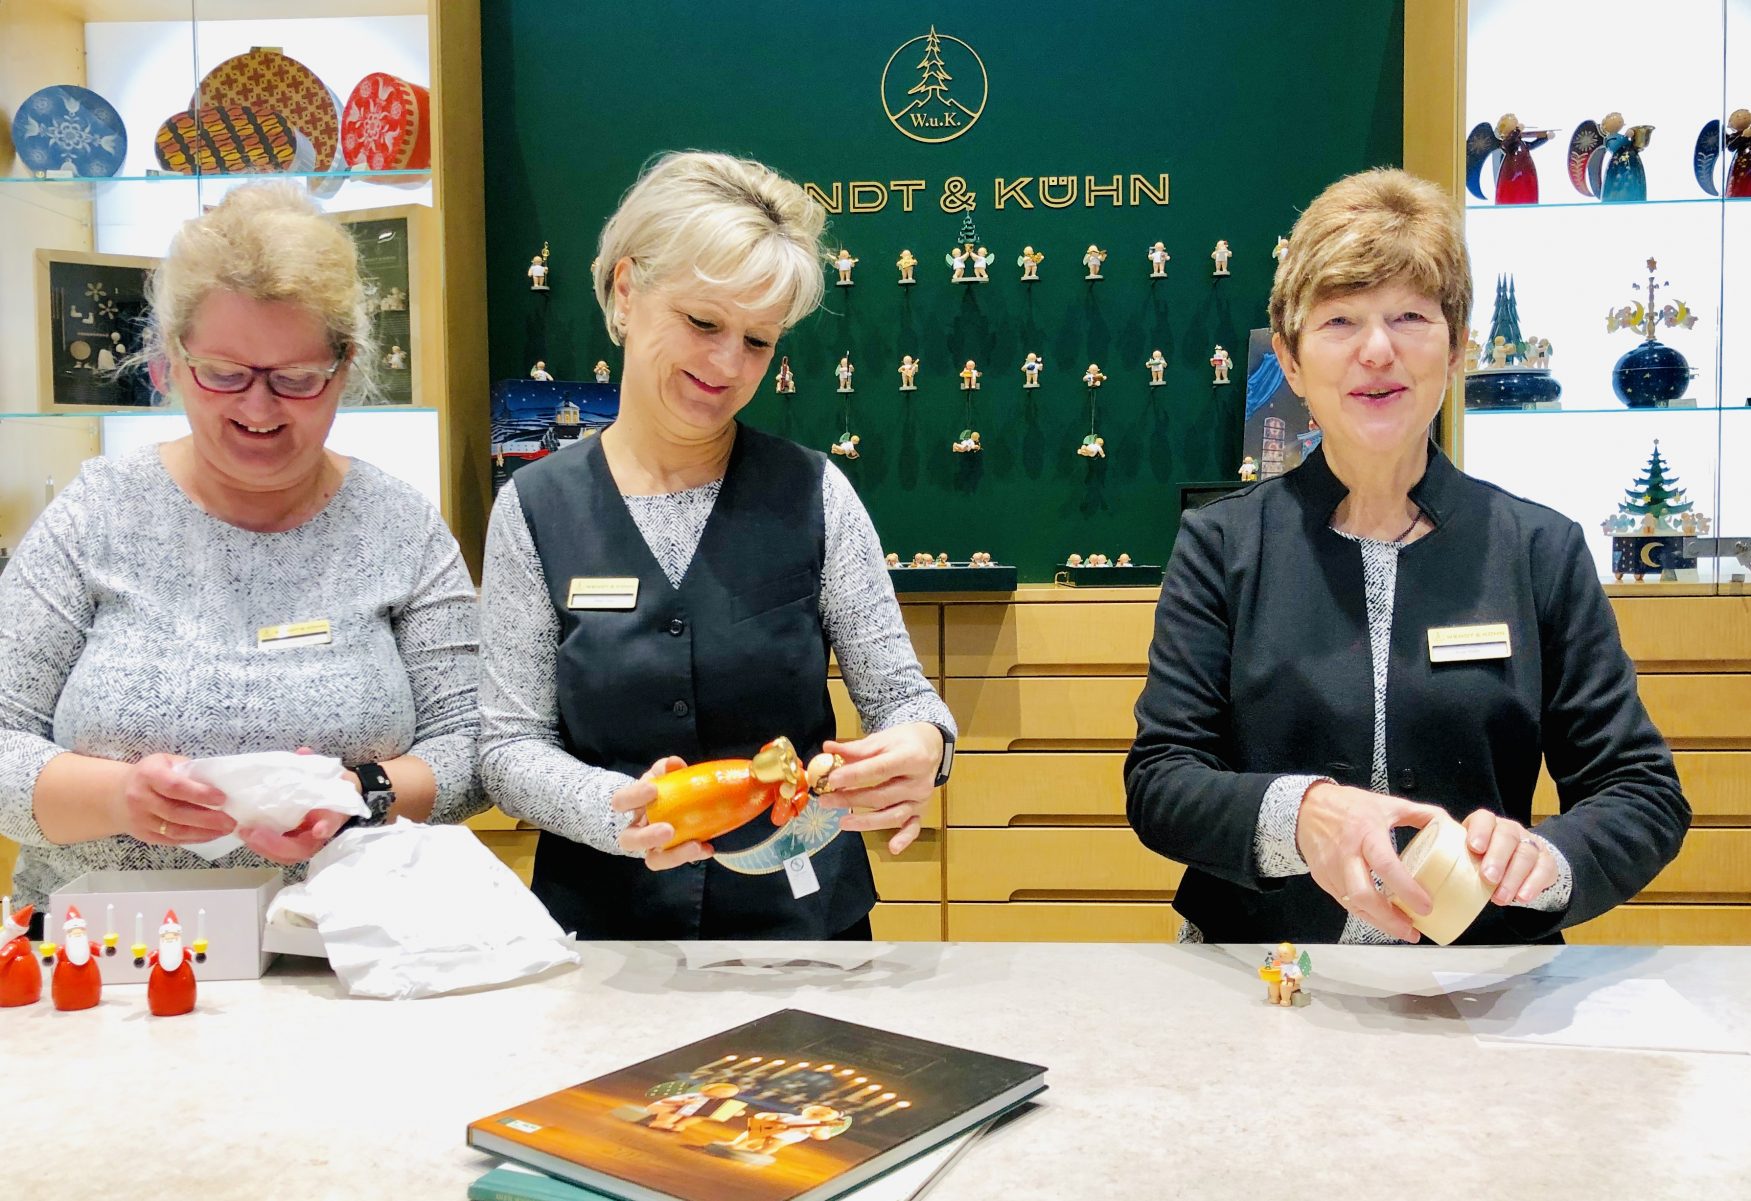 In der Seiffener Wendt & Kühn Figurenwelt werden die Kunden kompetent beraten, Foto: Weirauch